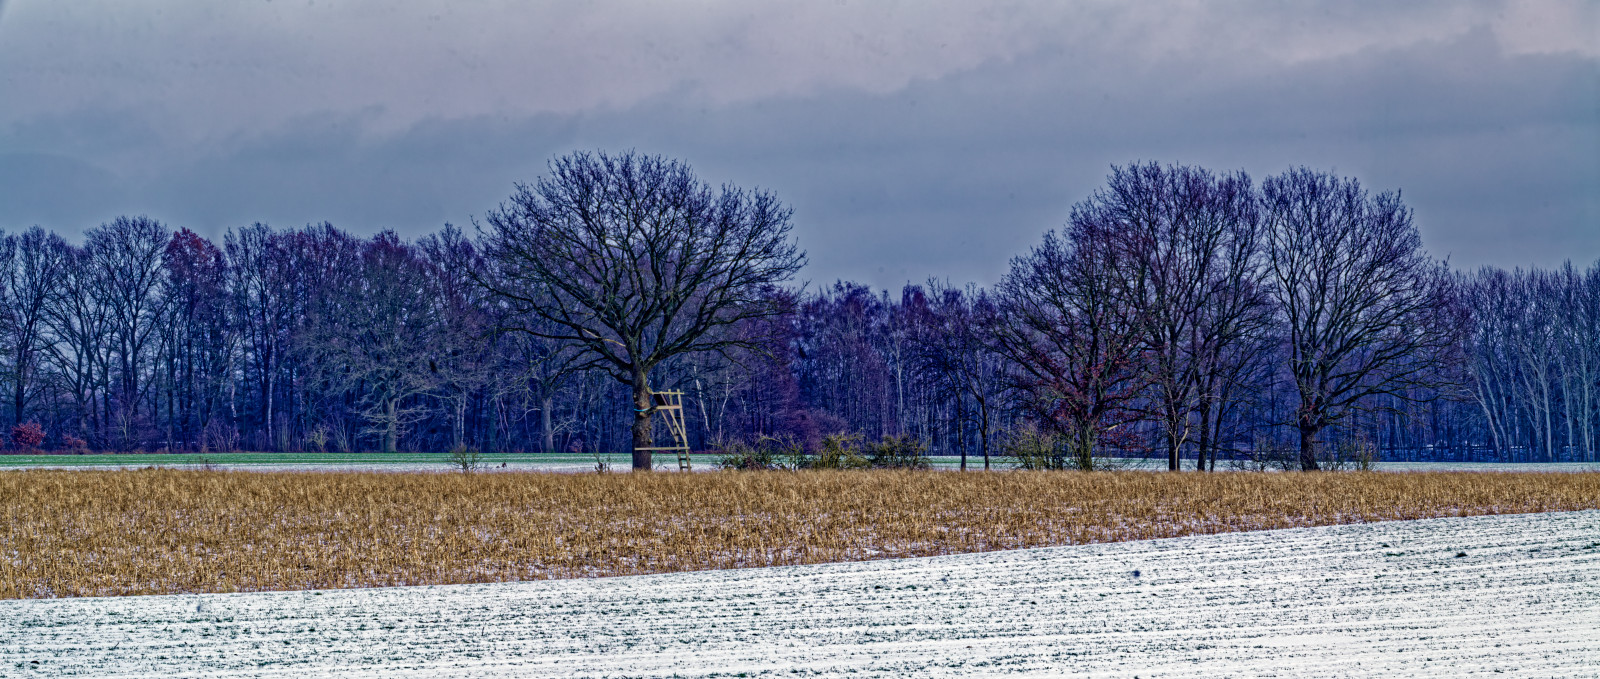 Panorama-QuerFormatFoto einer WinterLandschaft. Oberes Drittel AbendHimmel mit Wolken; mittleres Drittel eine BaumReihe am Horizont und vier Bäume mit einem Hochsitz im MittelGrund. Unteres Drittel, diagonal getennt, ein braunes Feld und ein beschneites weißes Feld.